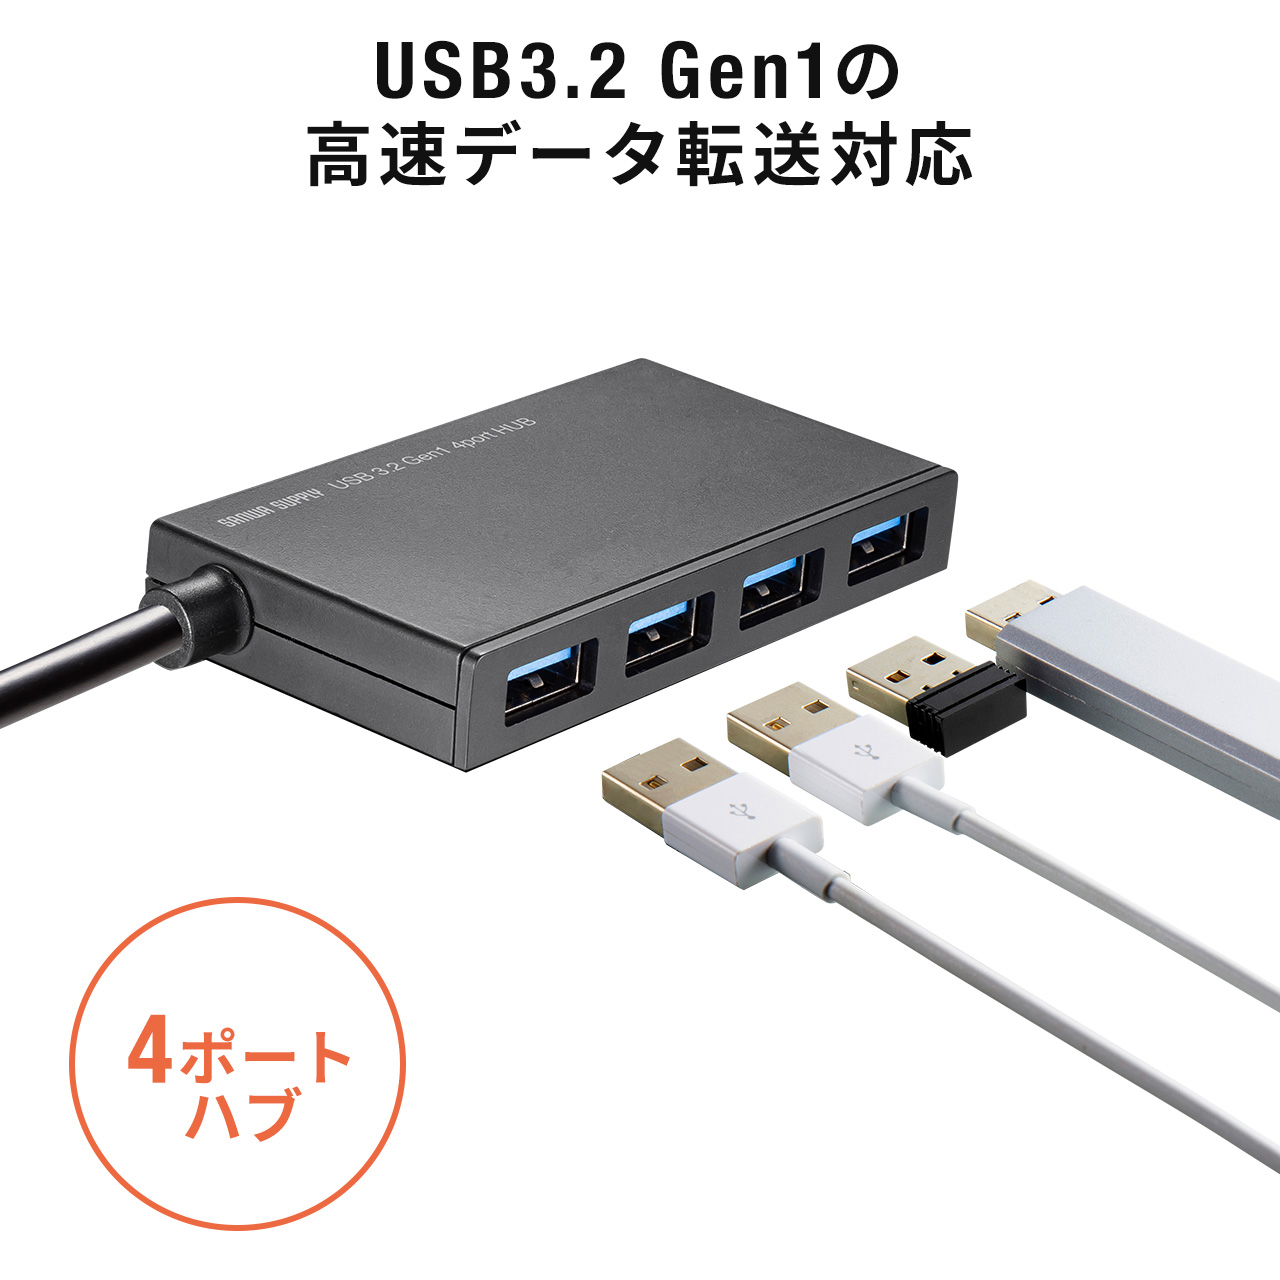 ★おススメ★USBハブ type-c 3.0 4ポート 超軽量 データ Type-C USBハブ 高速転送